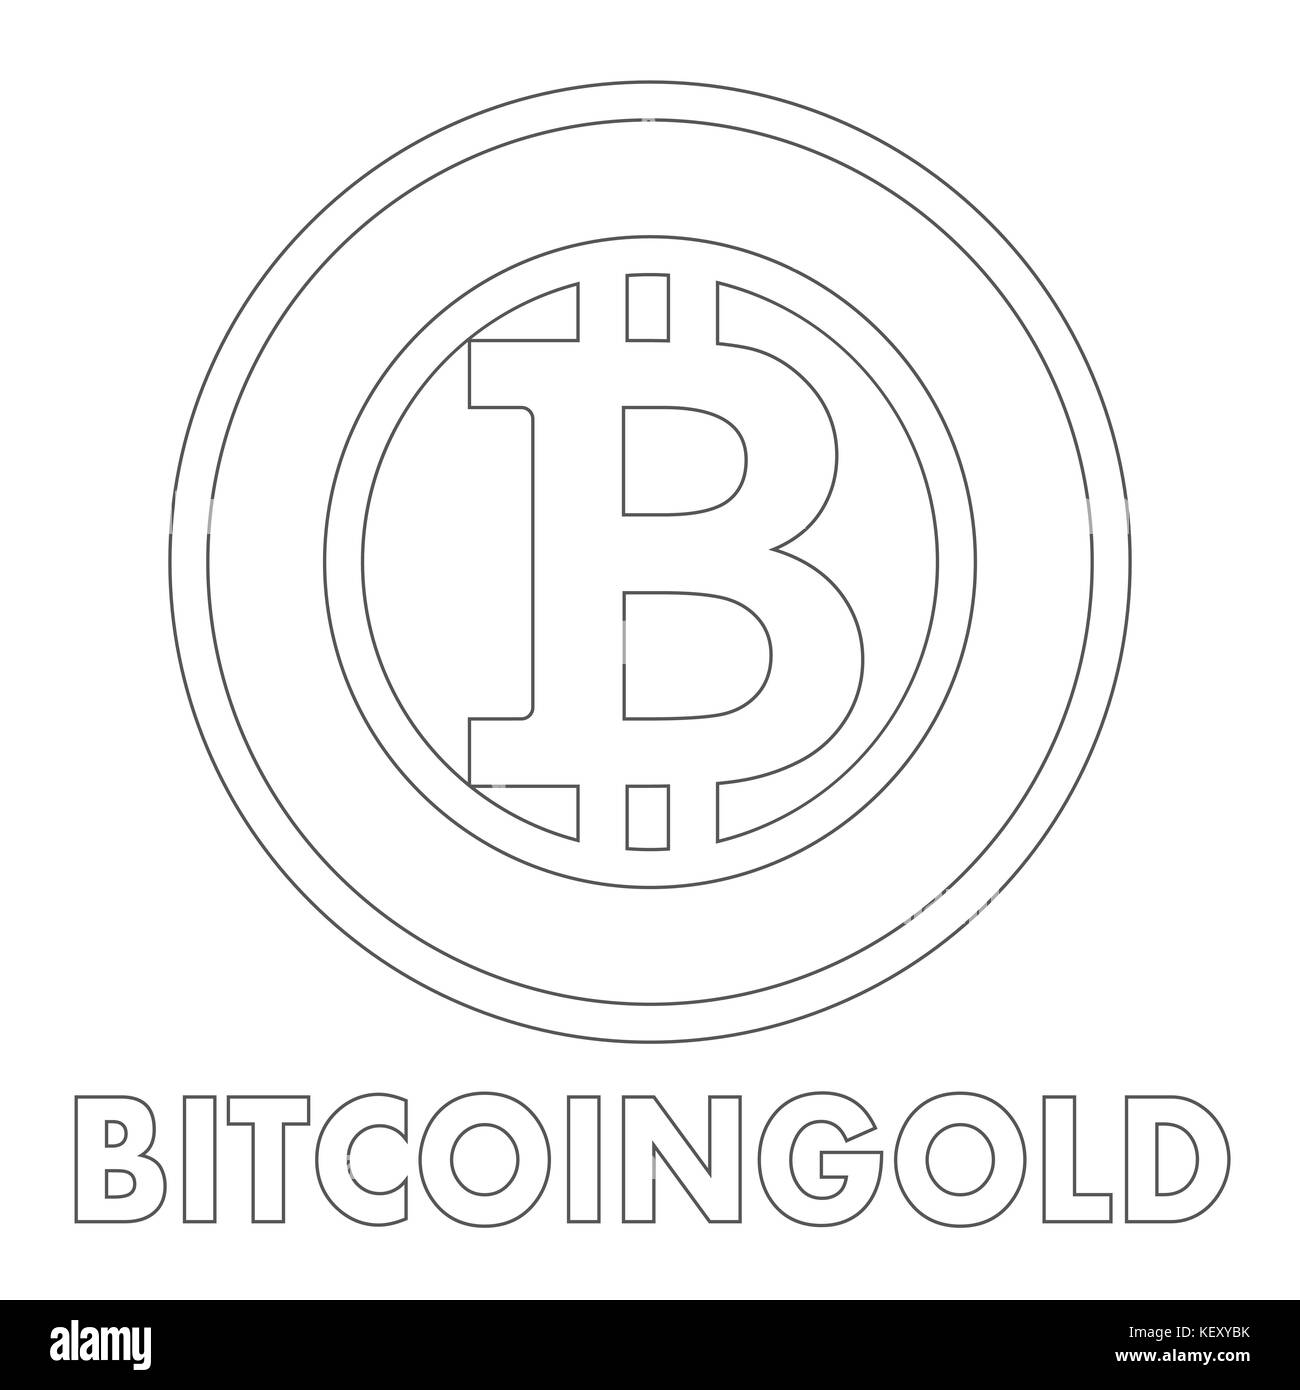 Bitcoin gold icona segno per denaro per internet Illustrazione Vettoriale